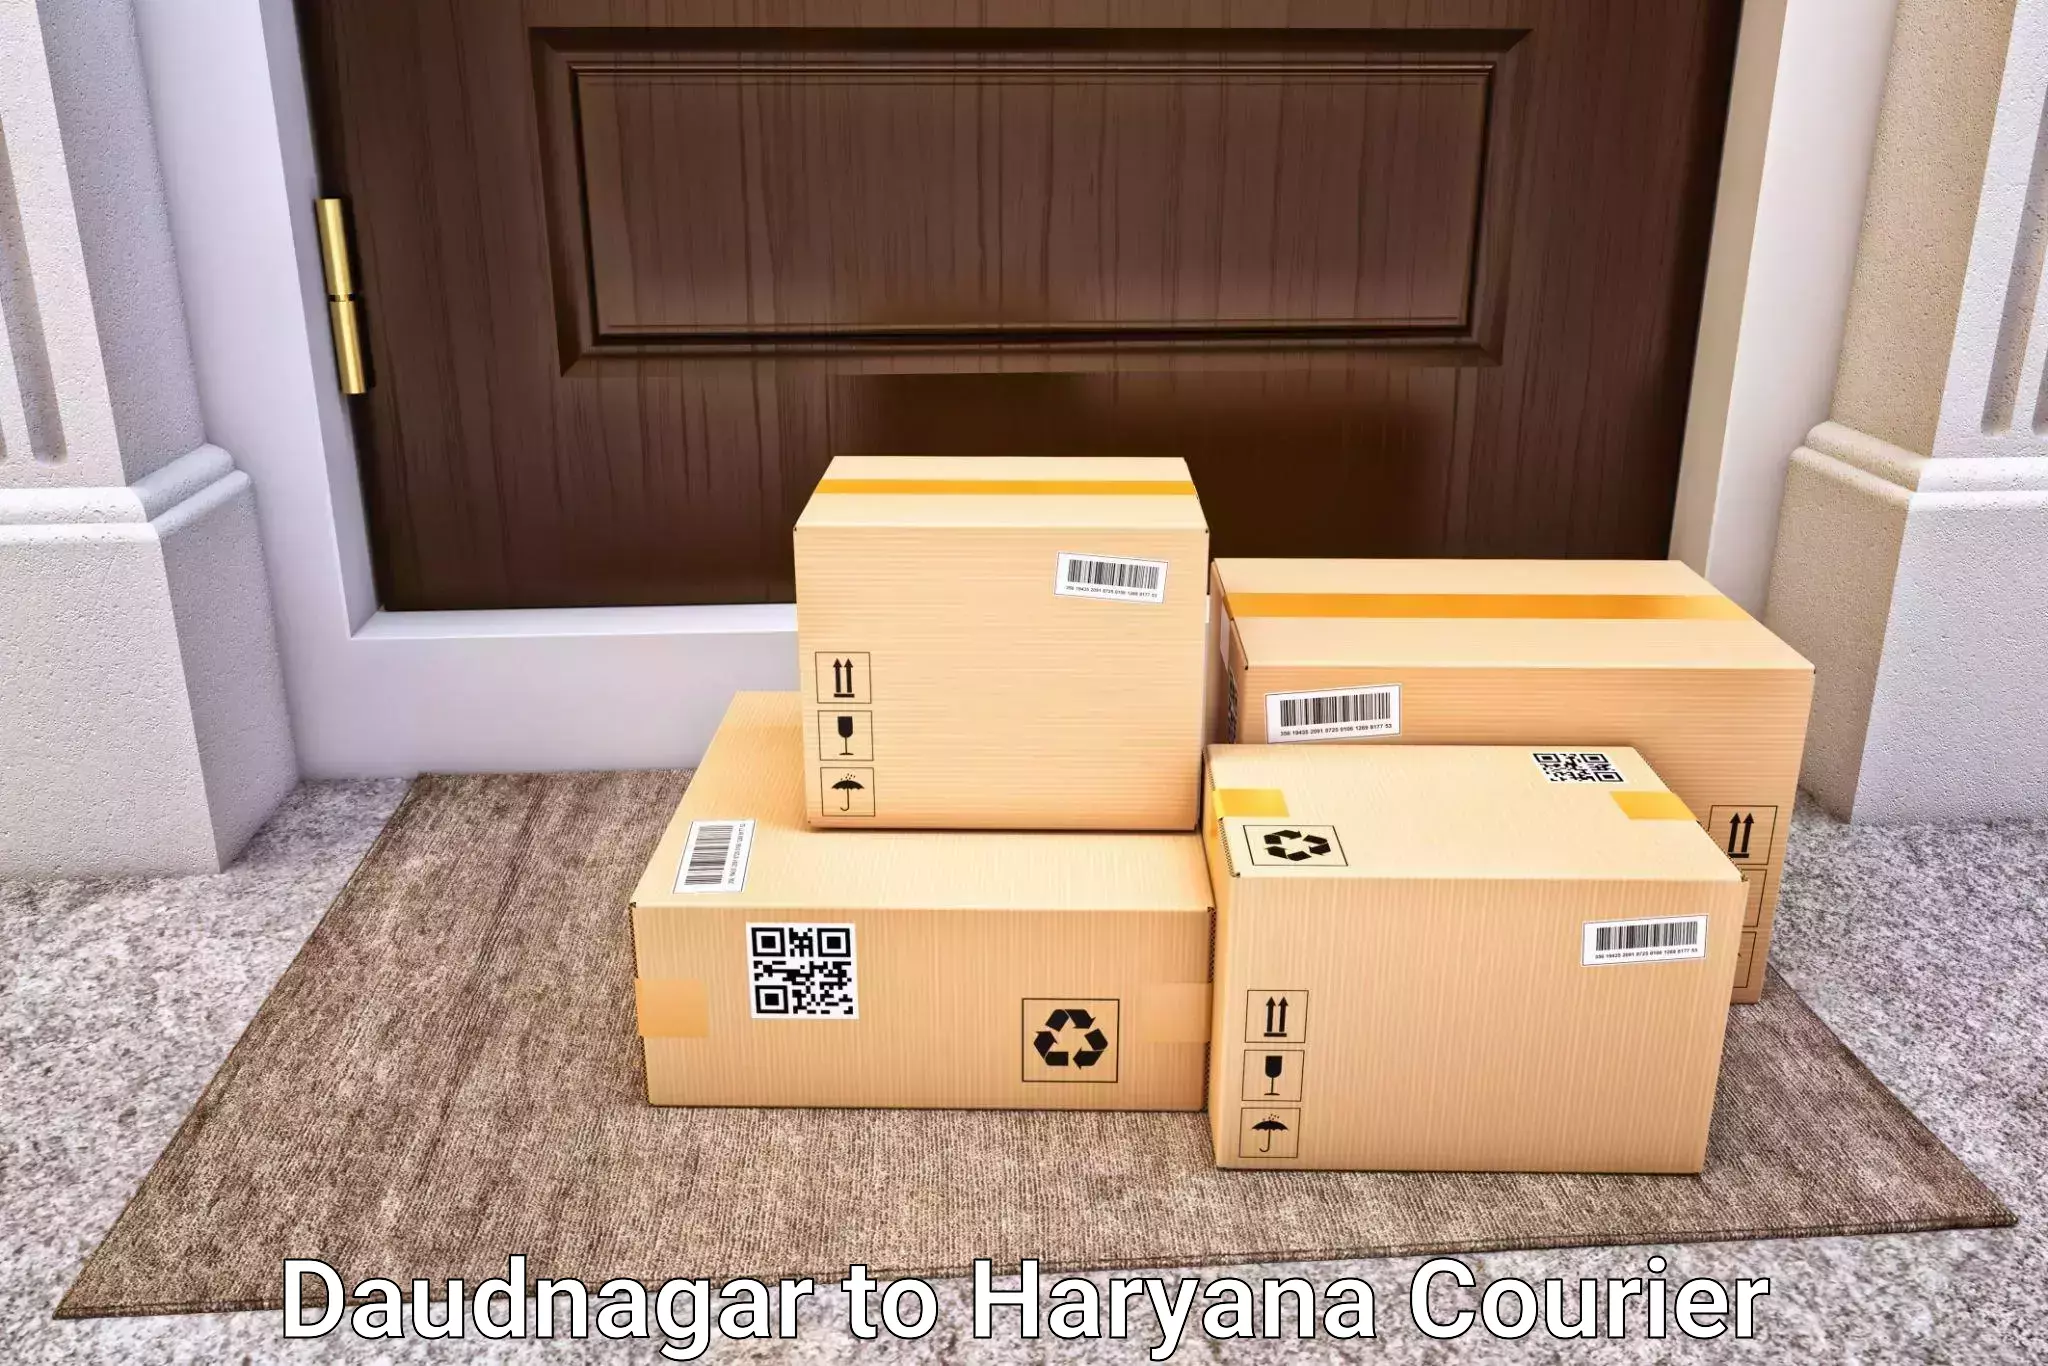 Luggage transport consultancy Daudnagar to Dharuhera